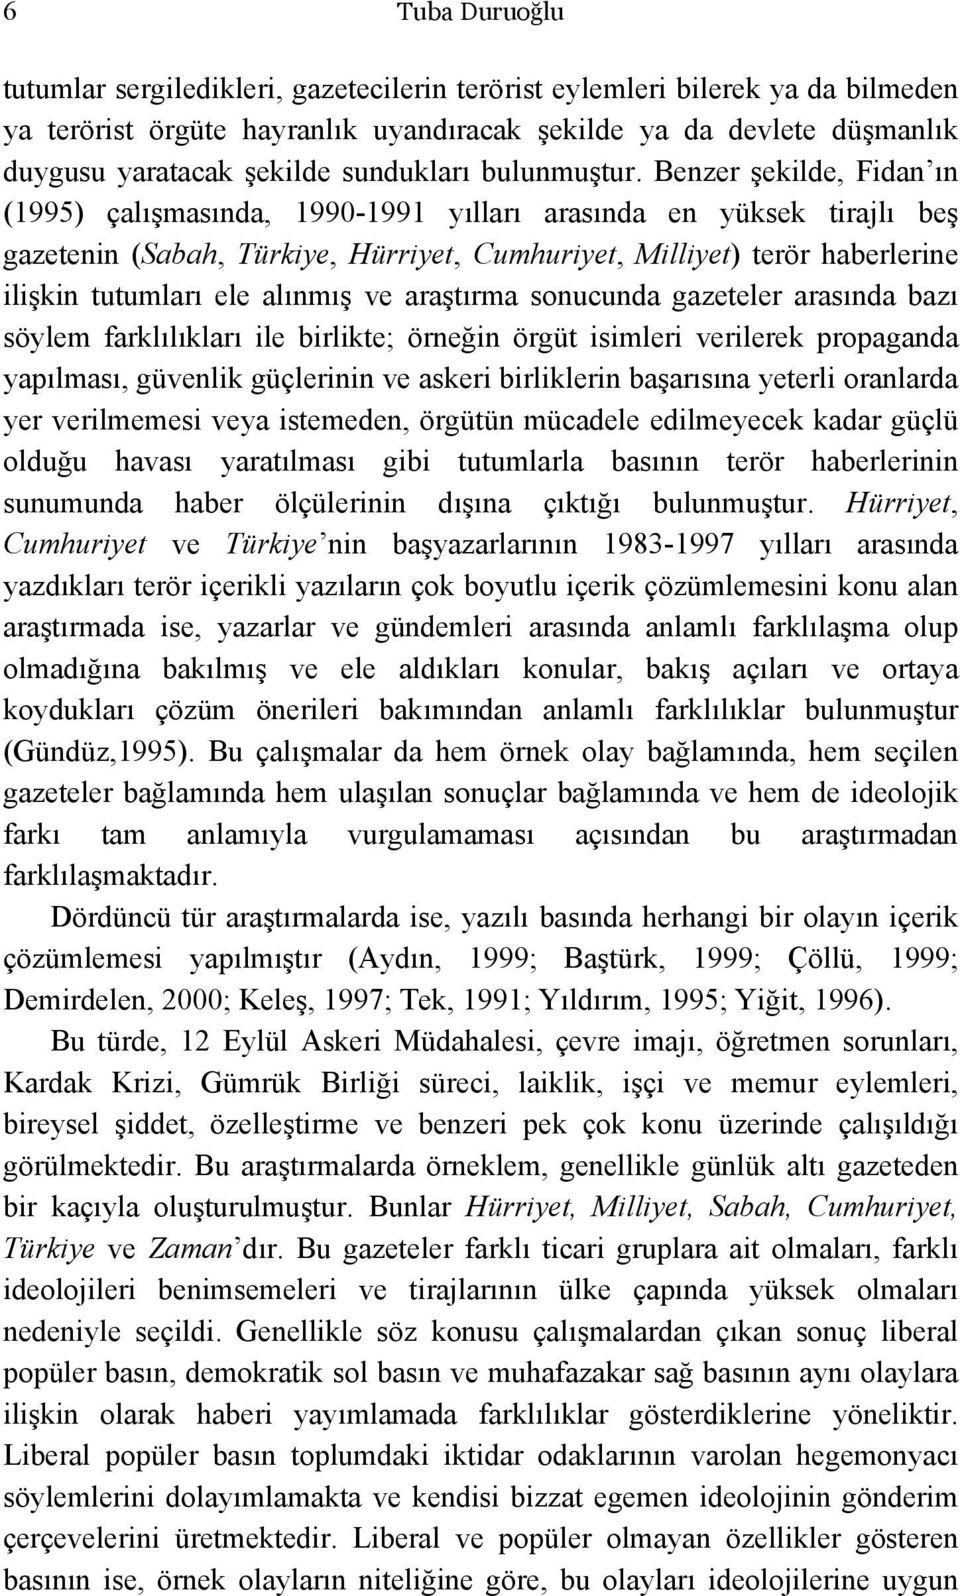 Benzer şekilde, Fidan ın (1995) çalışmasında, 1990-1991 yılları arasında en yüksek tirajlı beş gazetenin (Sabah, Türkiye, Hürriyet, Cumhuriyet, Milliyet) terör haberlerine ilişkin tutumları ele